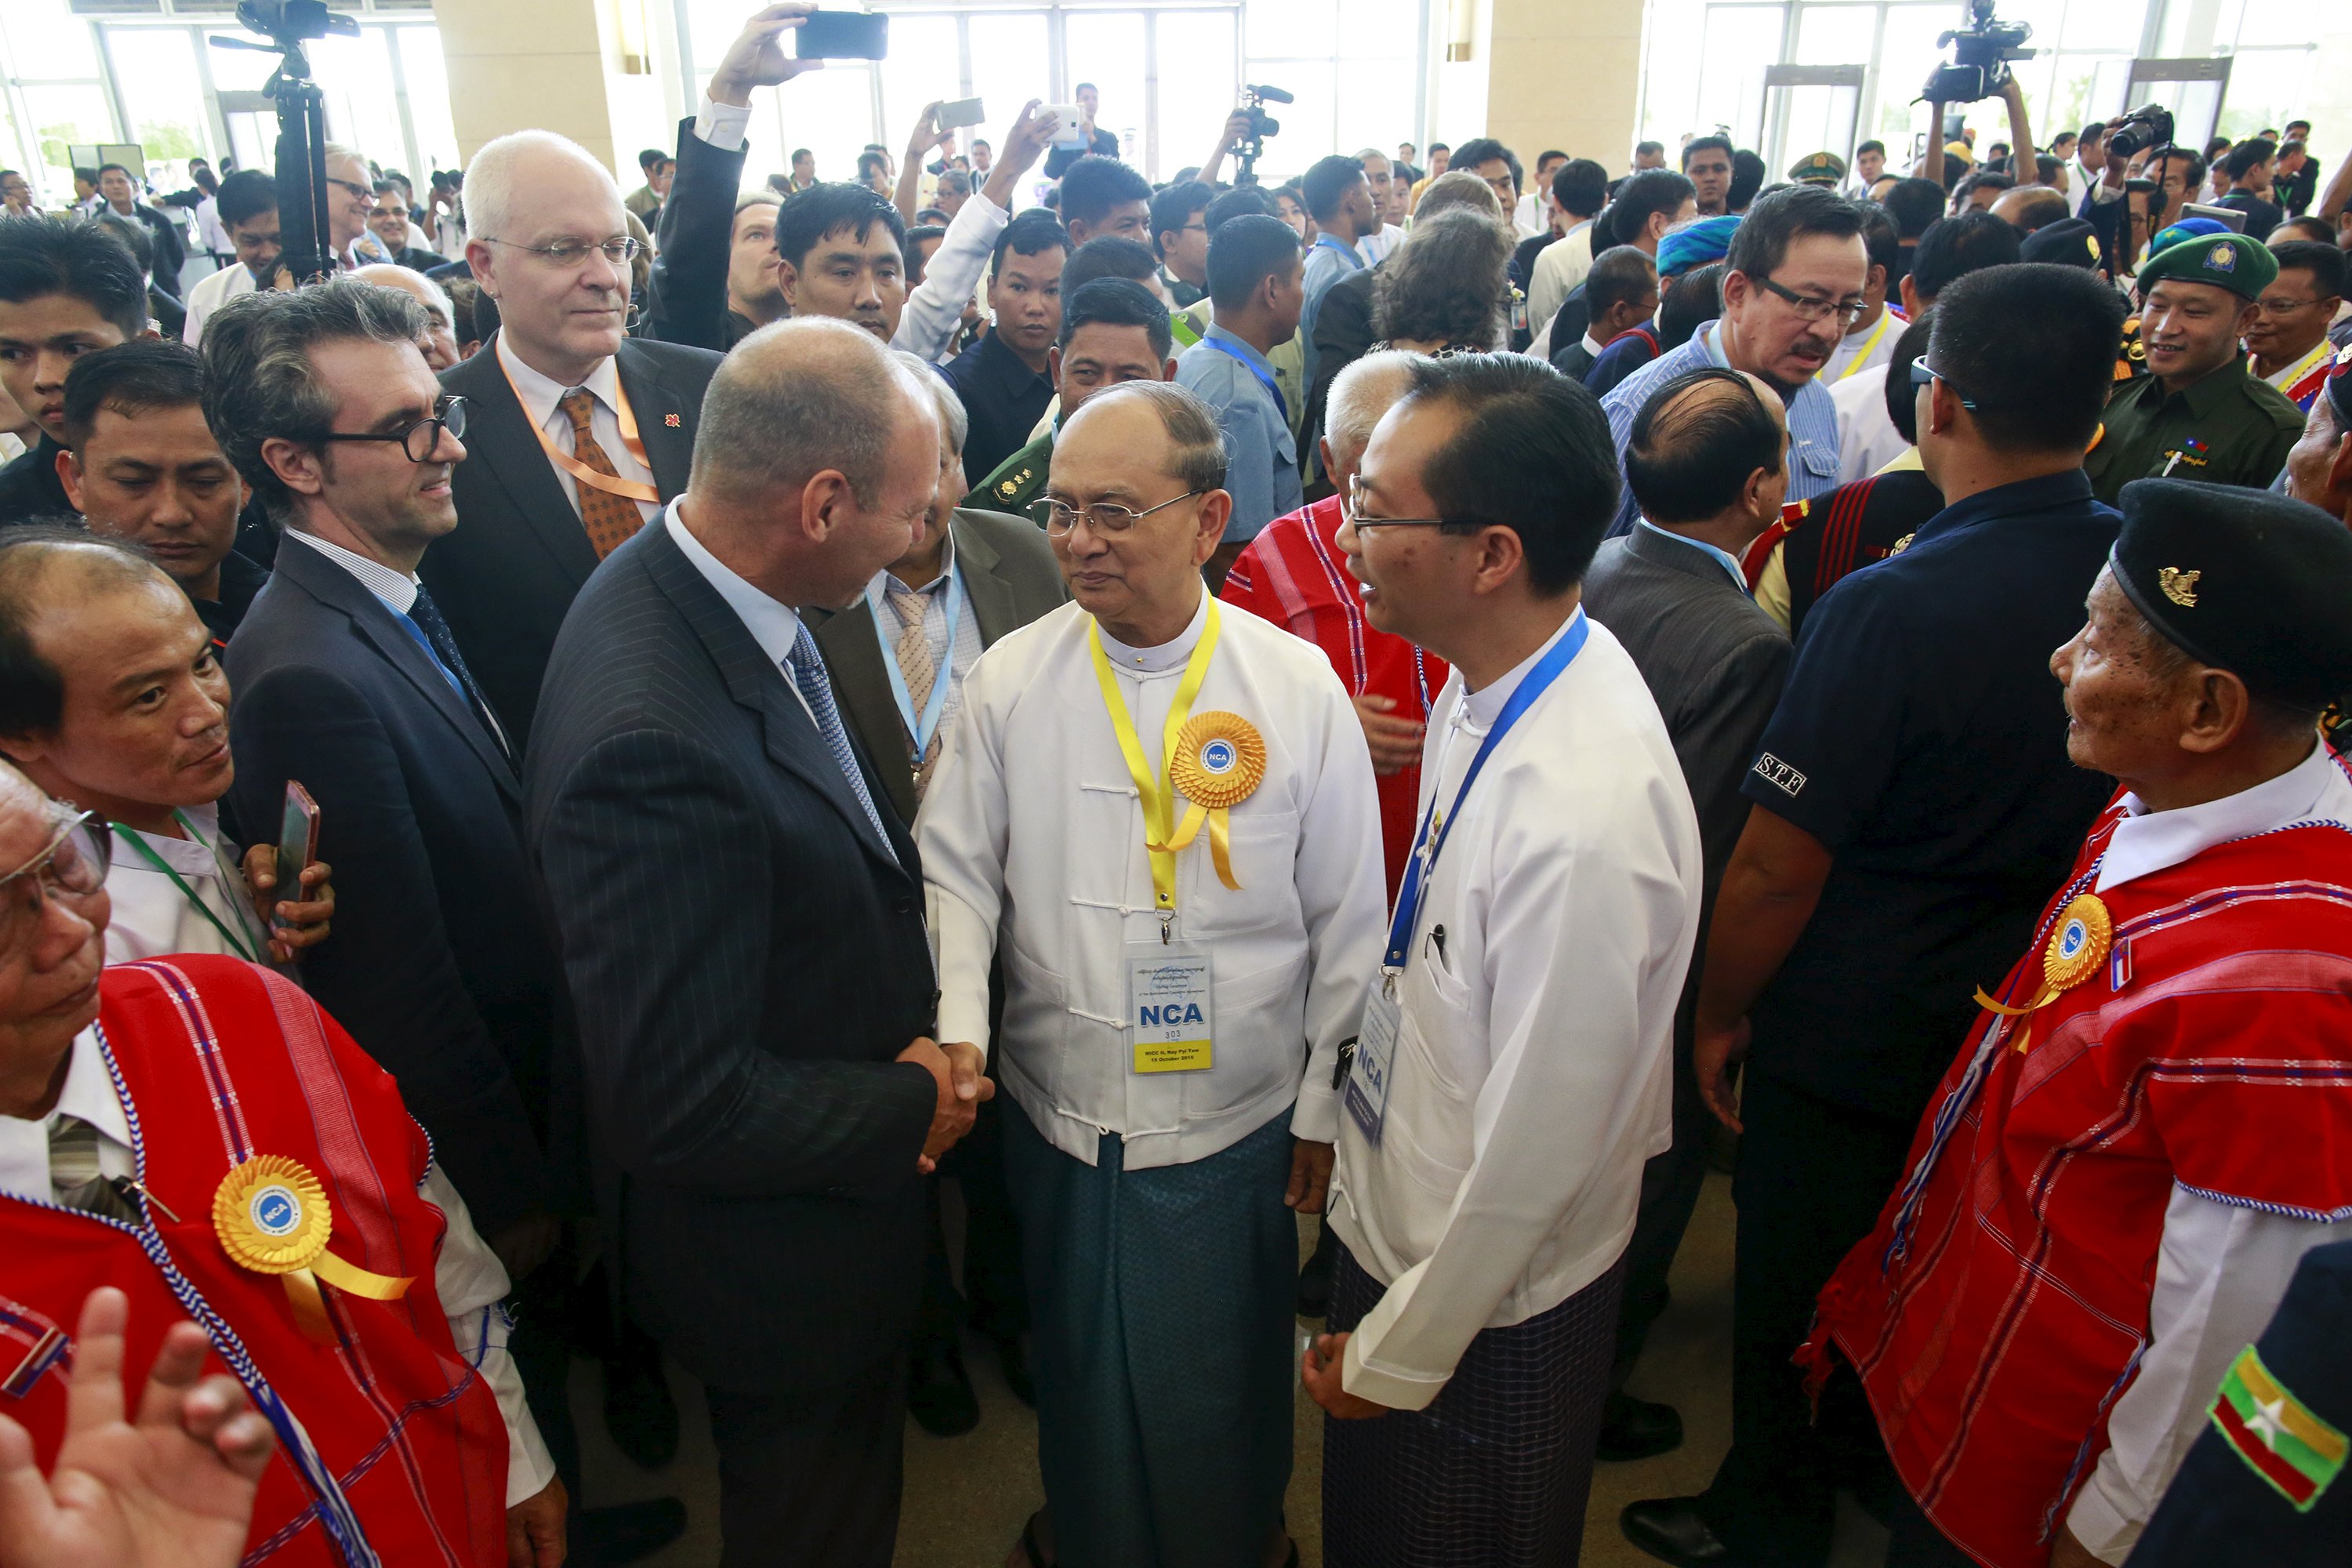 Tổng thống Thein Sein (giữa) là người góp công lớn trong quá trình cải cách của Myanmar - Ảnh: Reuters